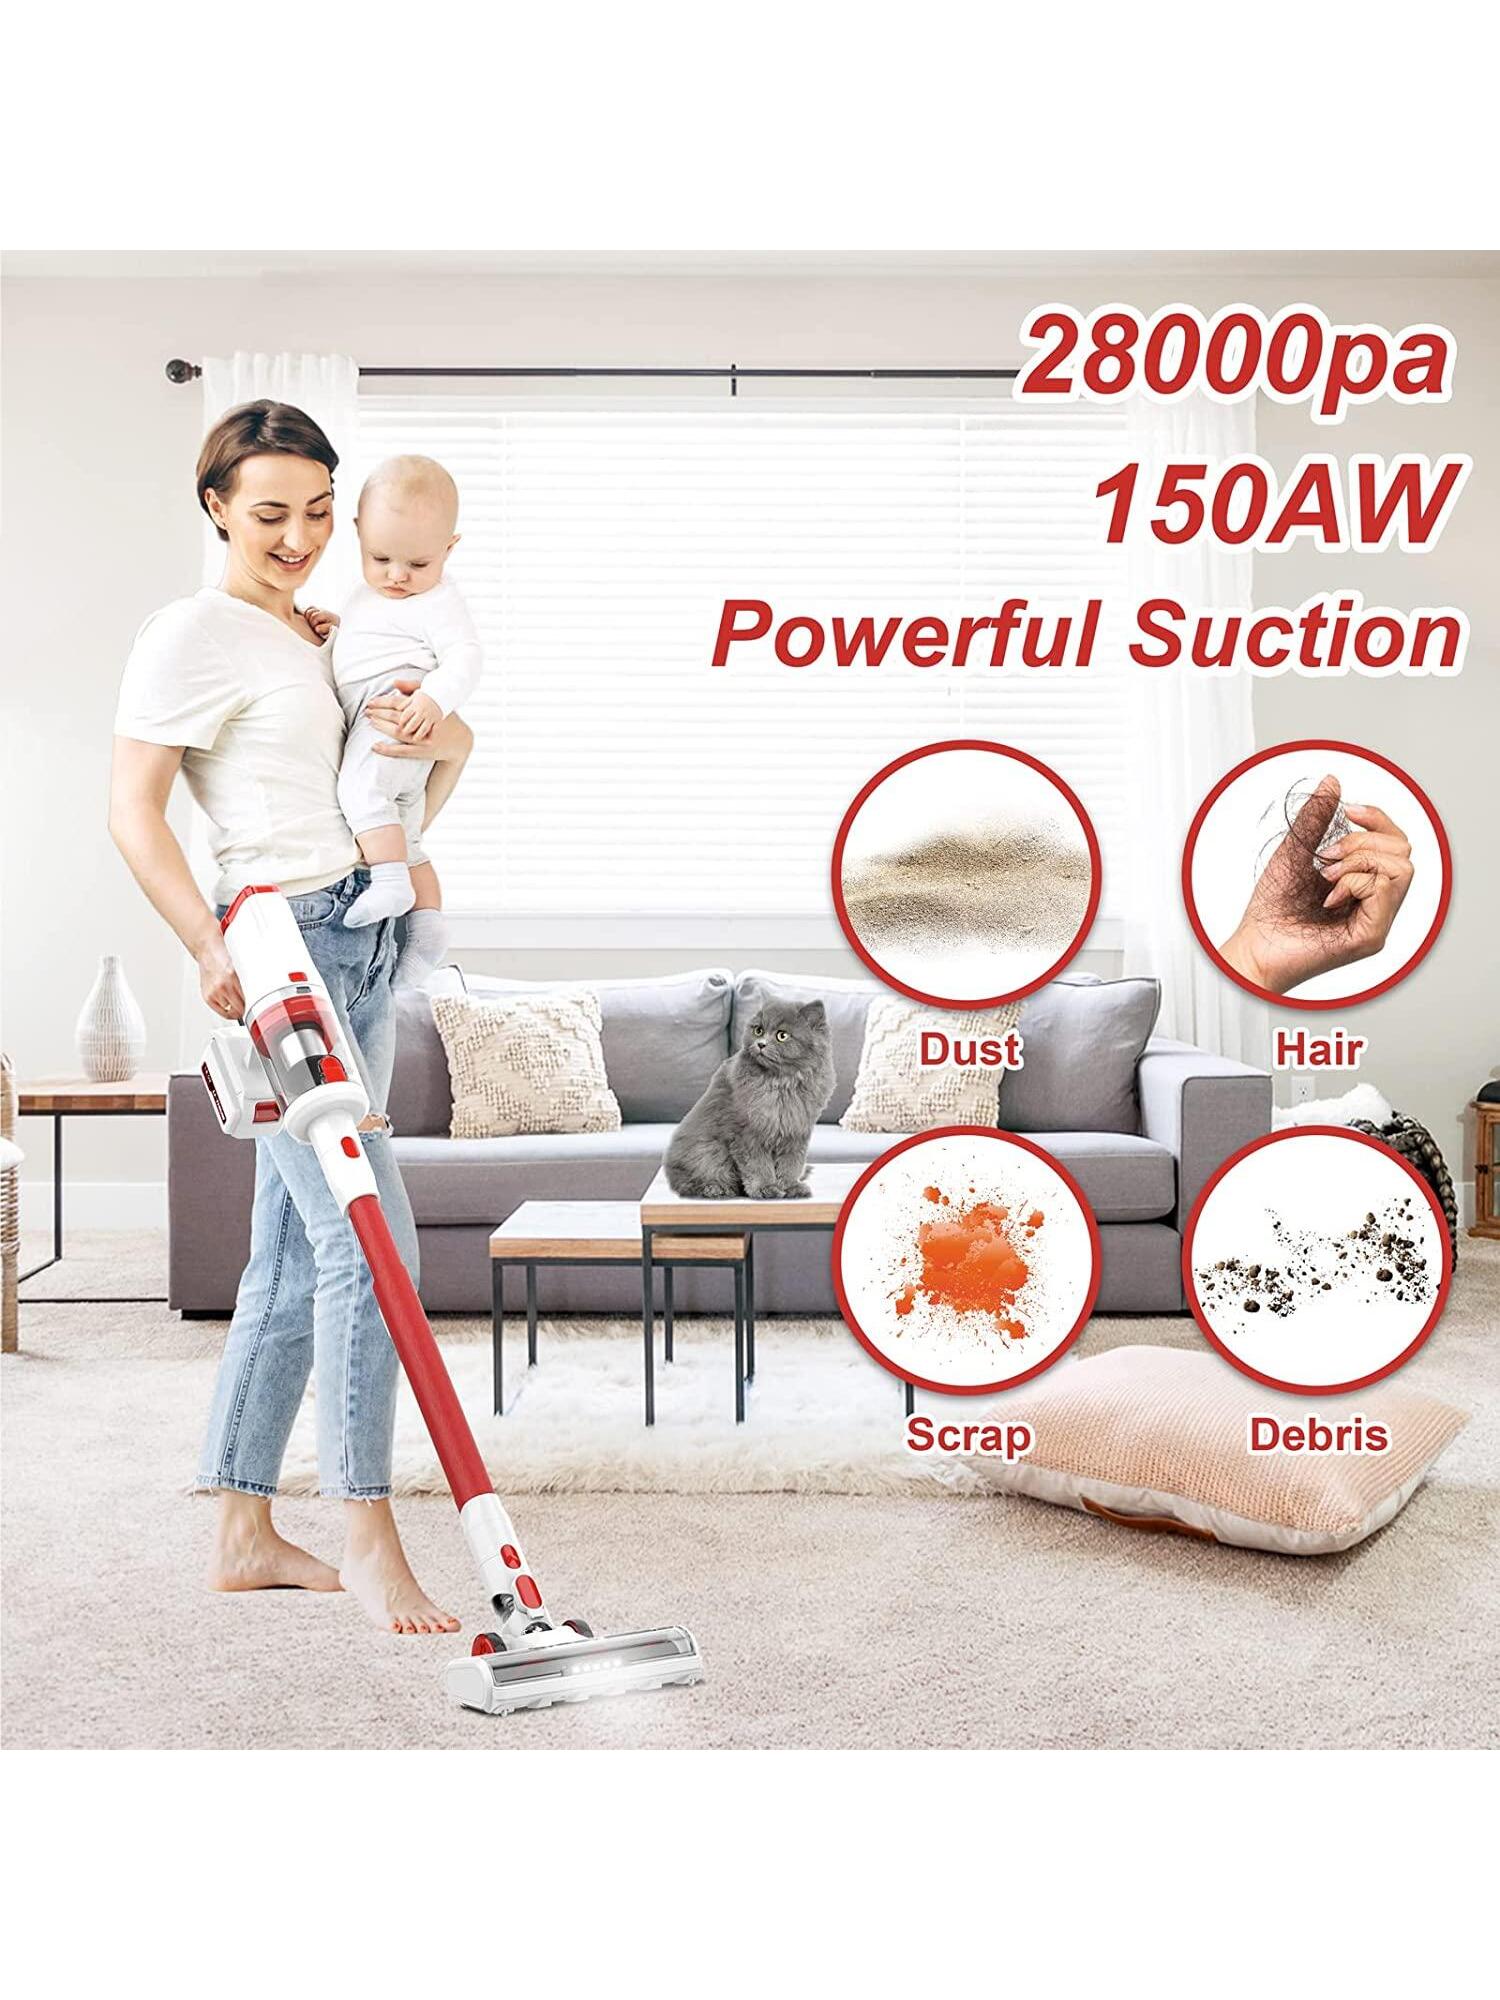 UMLo Cordless Vacuum Cleaner, 6-in-1 Lightweight Stick Vacuum